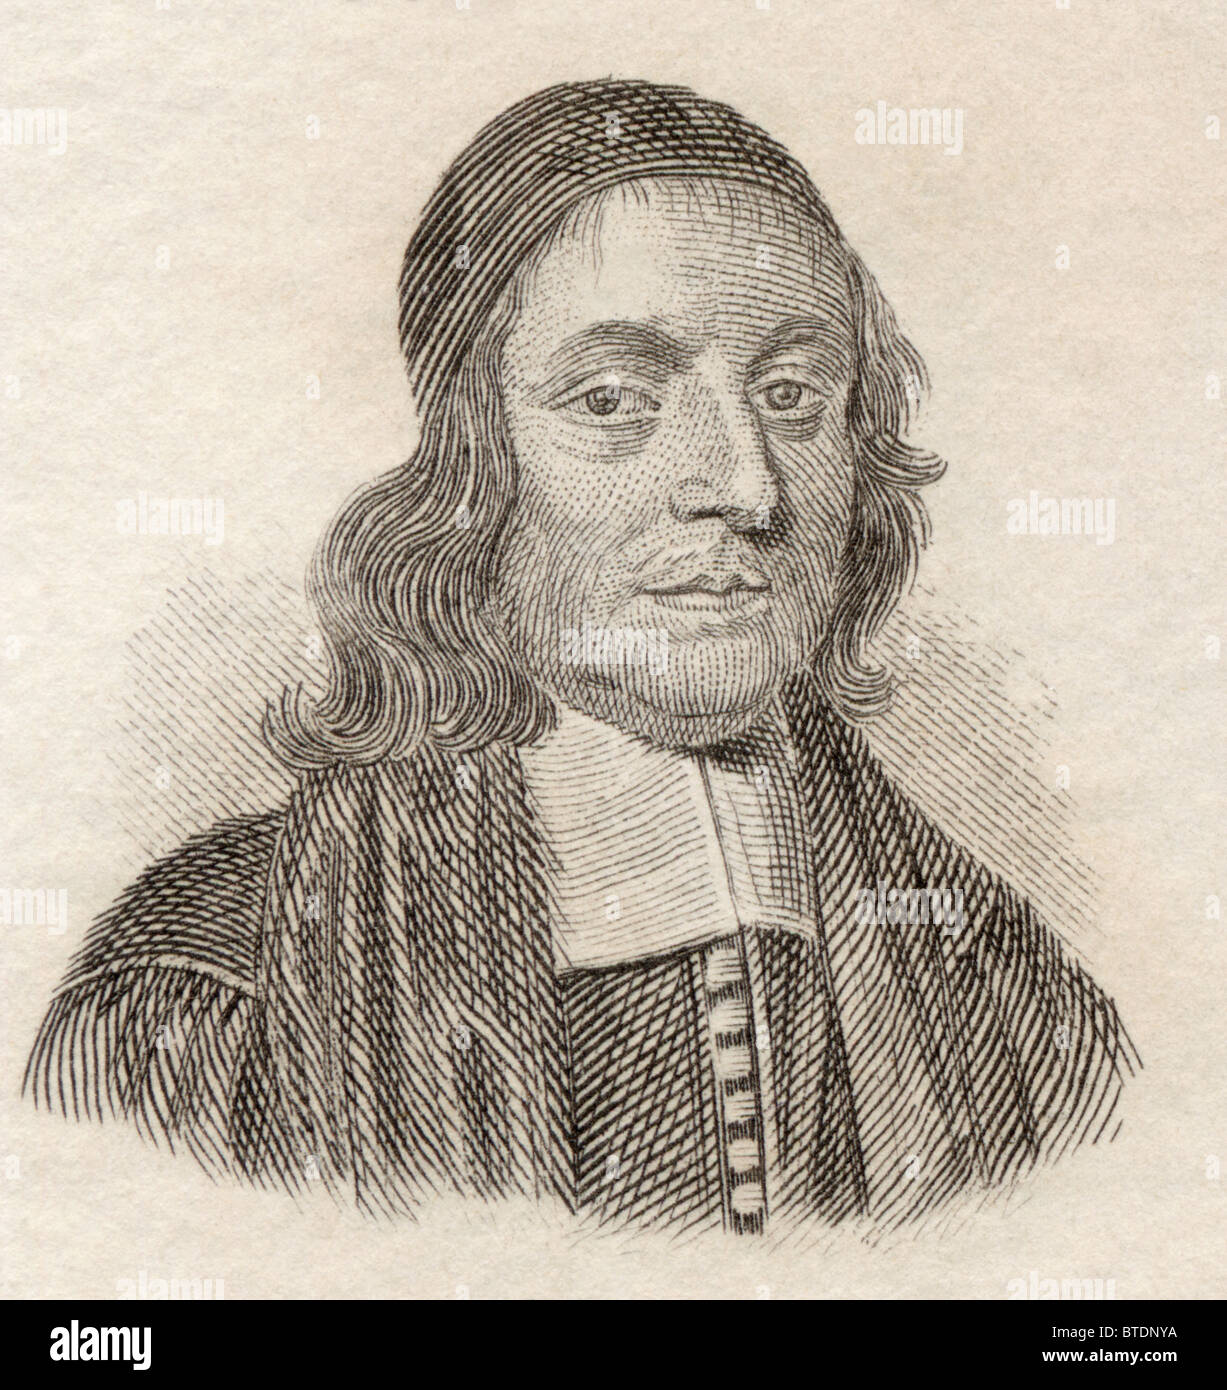 Вал ис. Джон Валлис. Джон Валлис (1616-1703). Джон Валлис математик. Дж Уоллис.